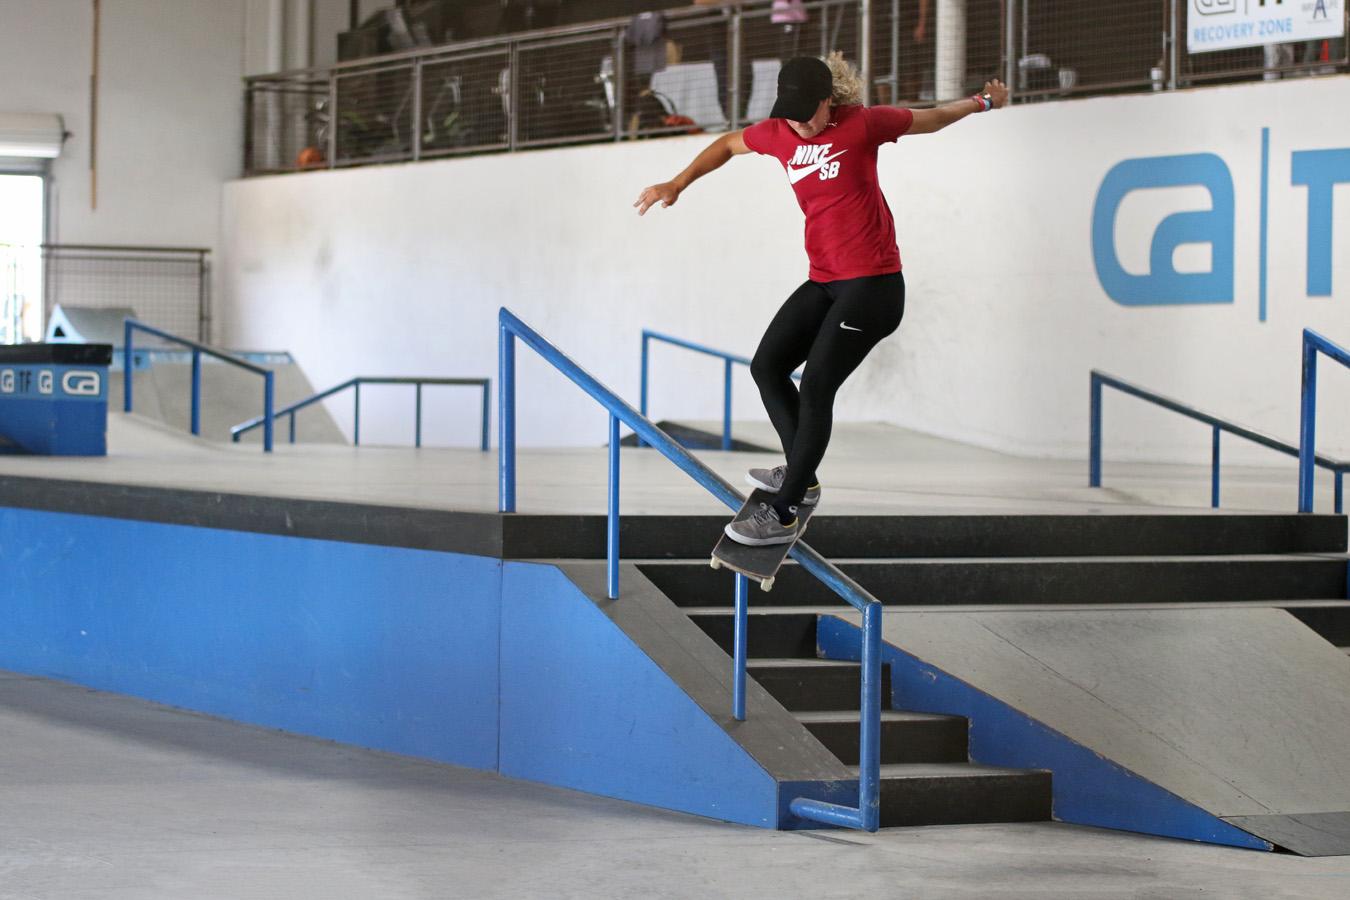 Cinco brasileiros avançam nas classificatórias globais da Street League Skateboarding, em Los Angeles (EUA)